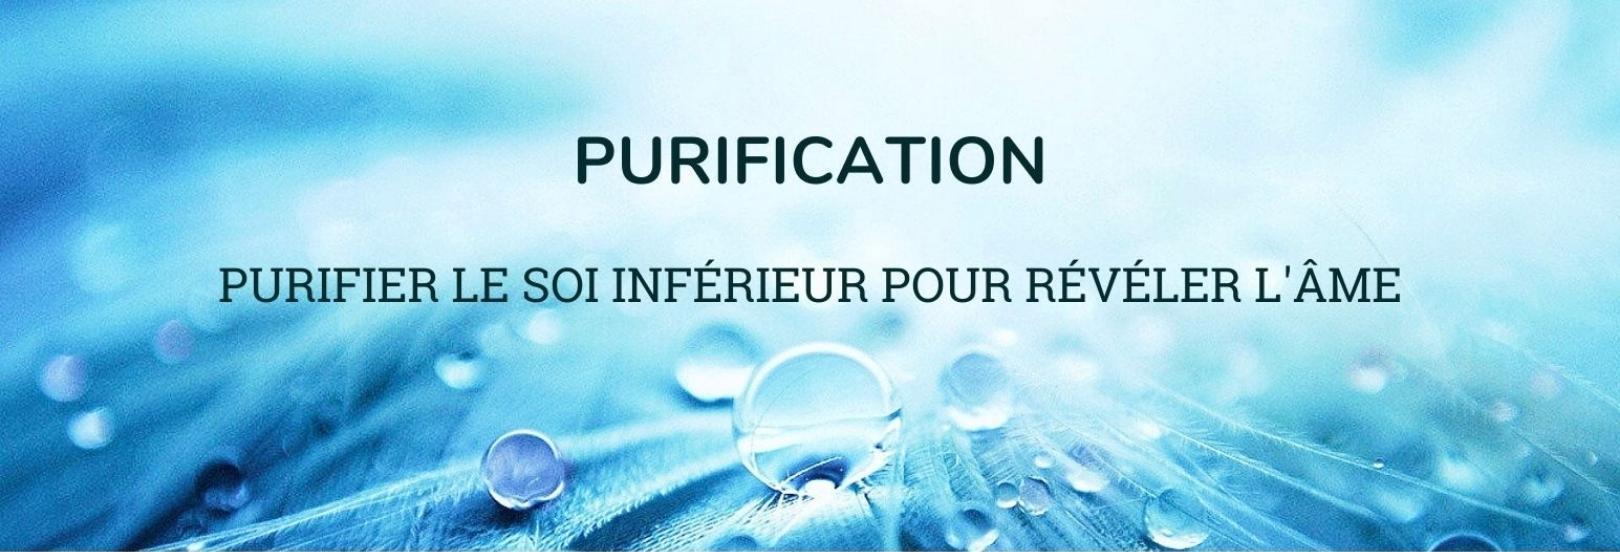 Purification: Purification/Purification